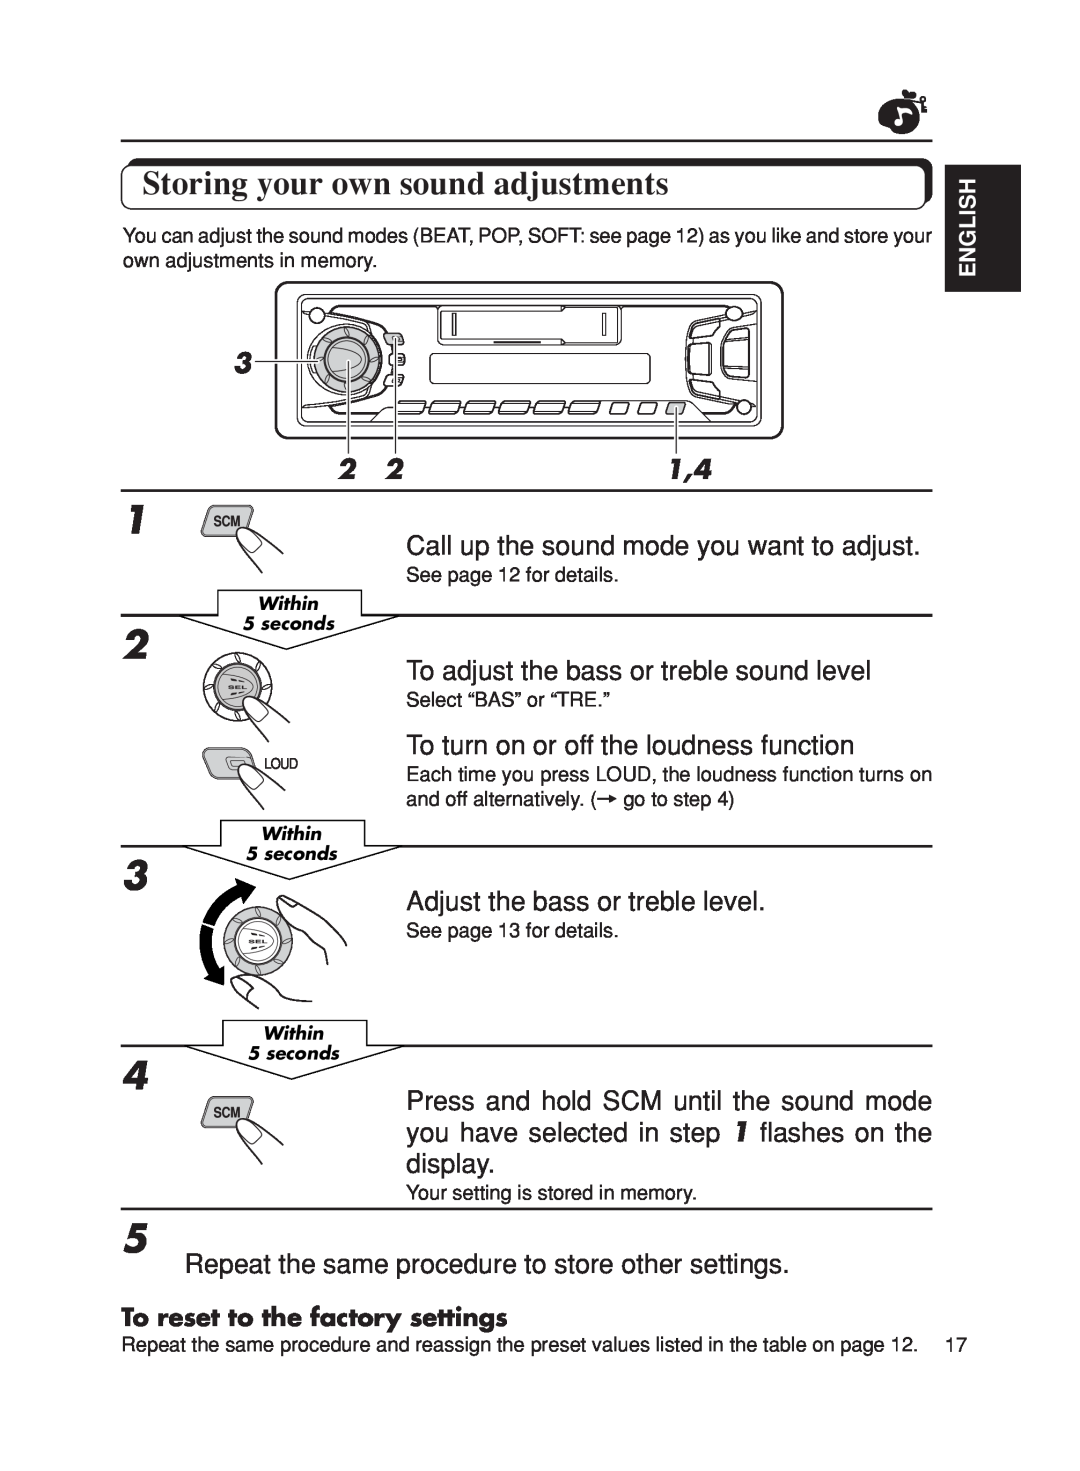 JVC KS-FX270 manual Storing your own sound adjustments 